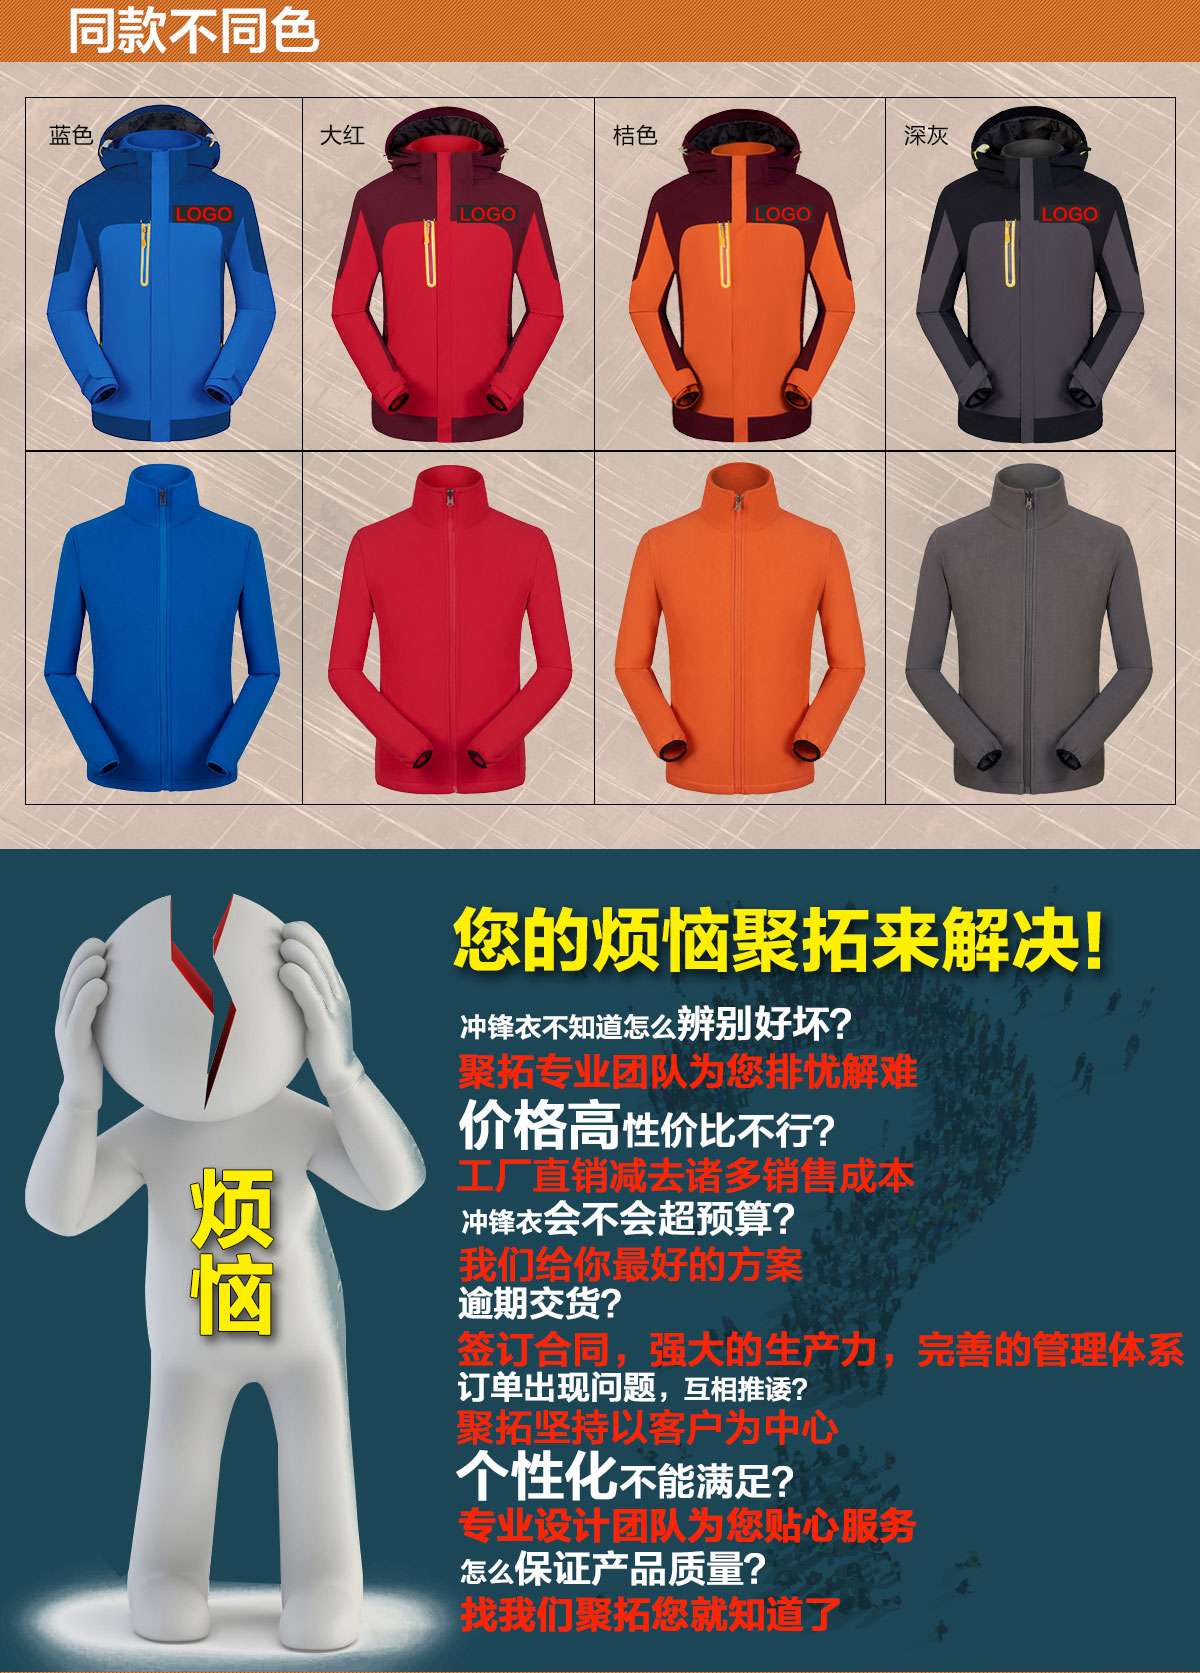 不同颜色的新款冲锋衣定制，鹰诺达为您提供高性价比冲锋衣